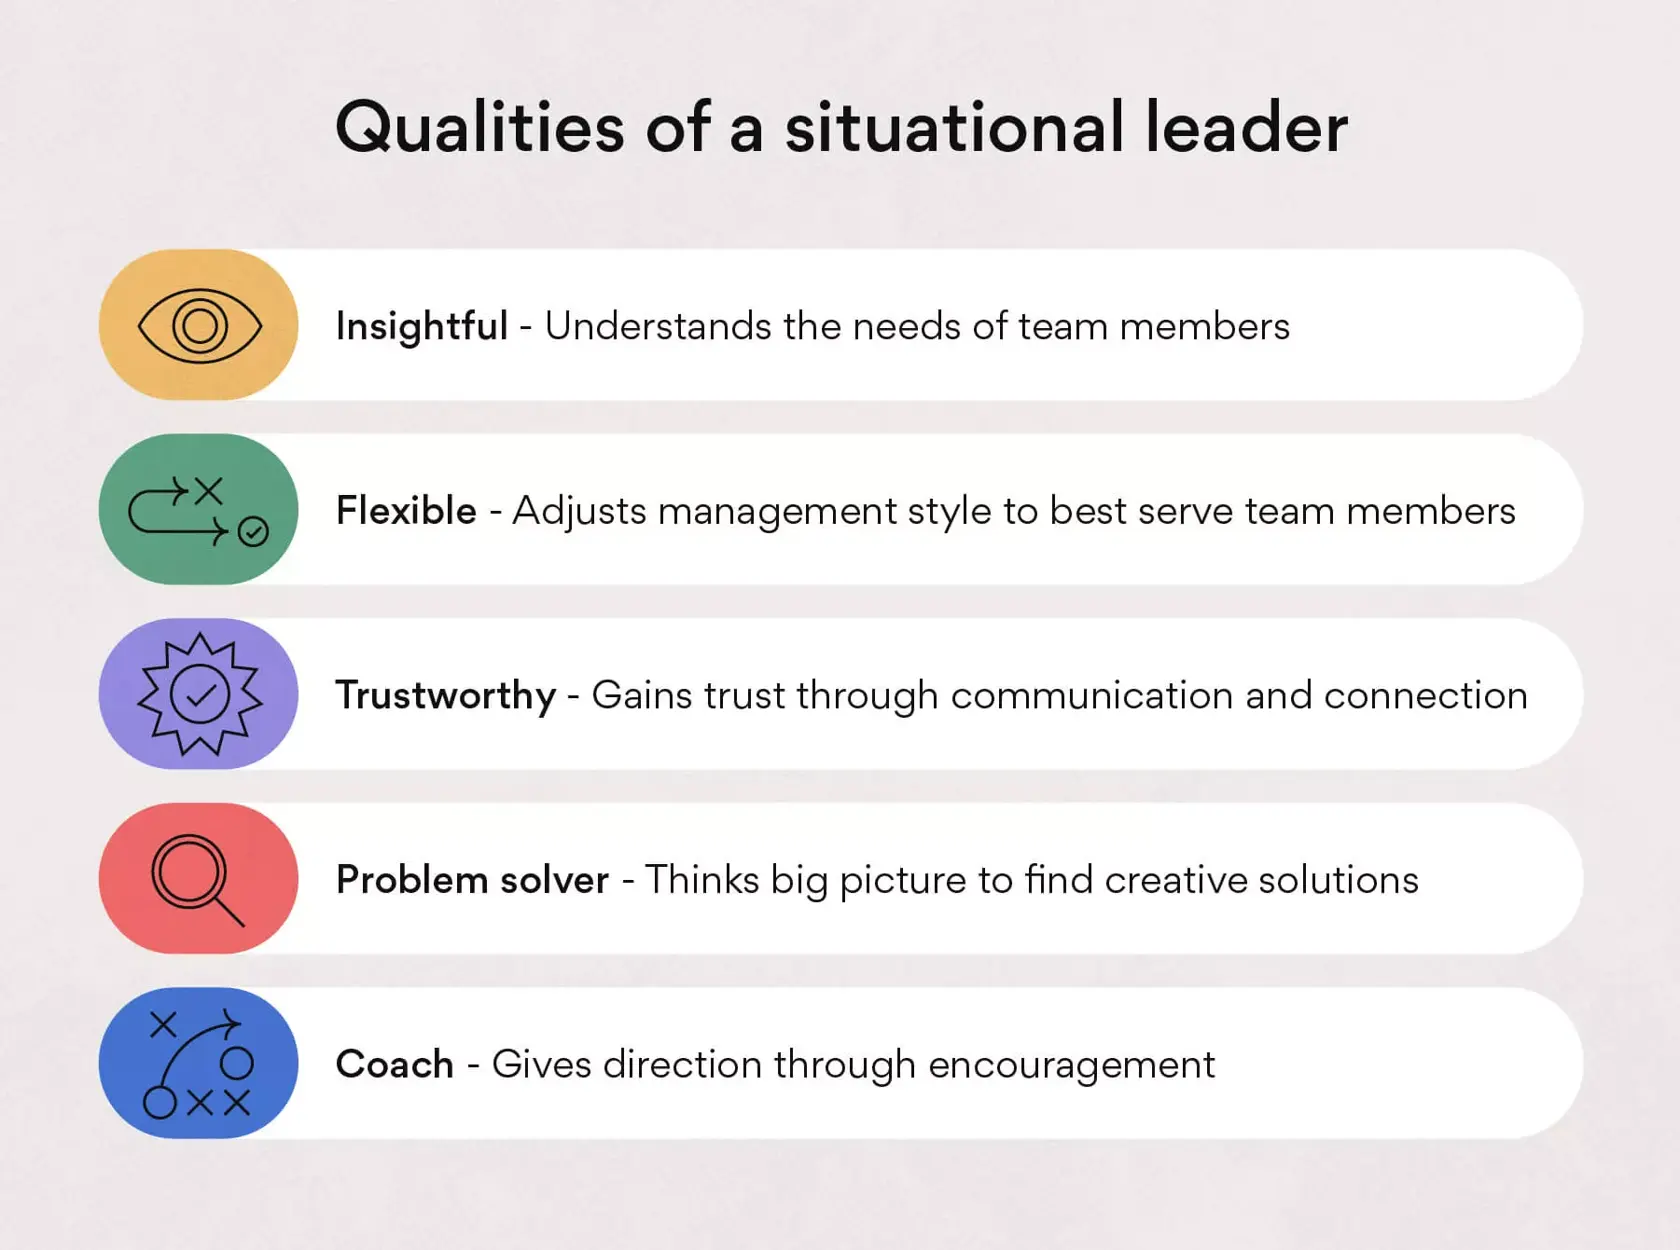 Qualidades da liderança situacional